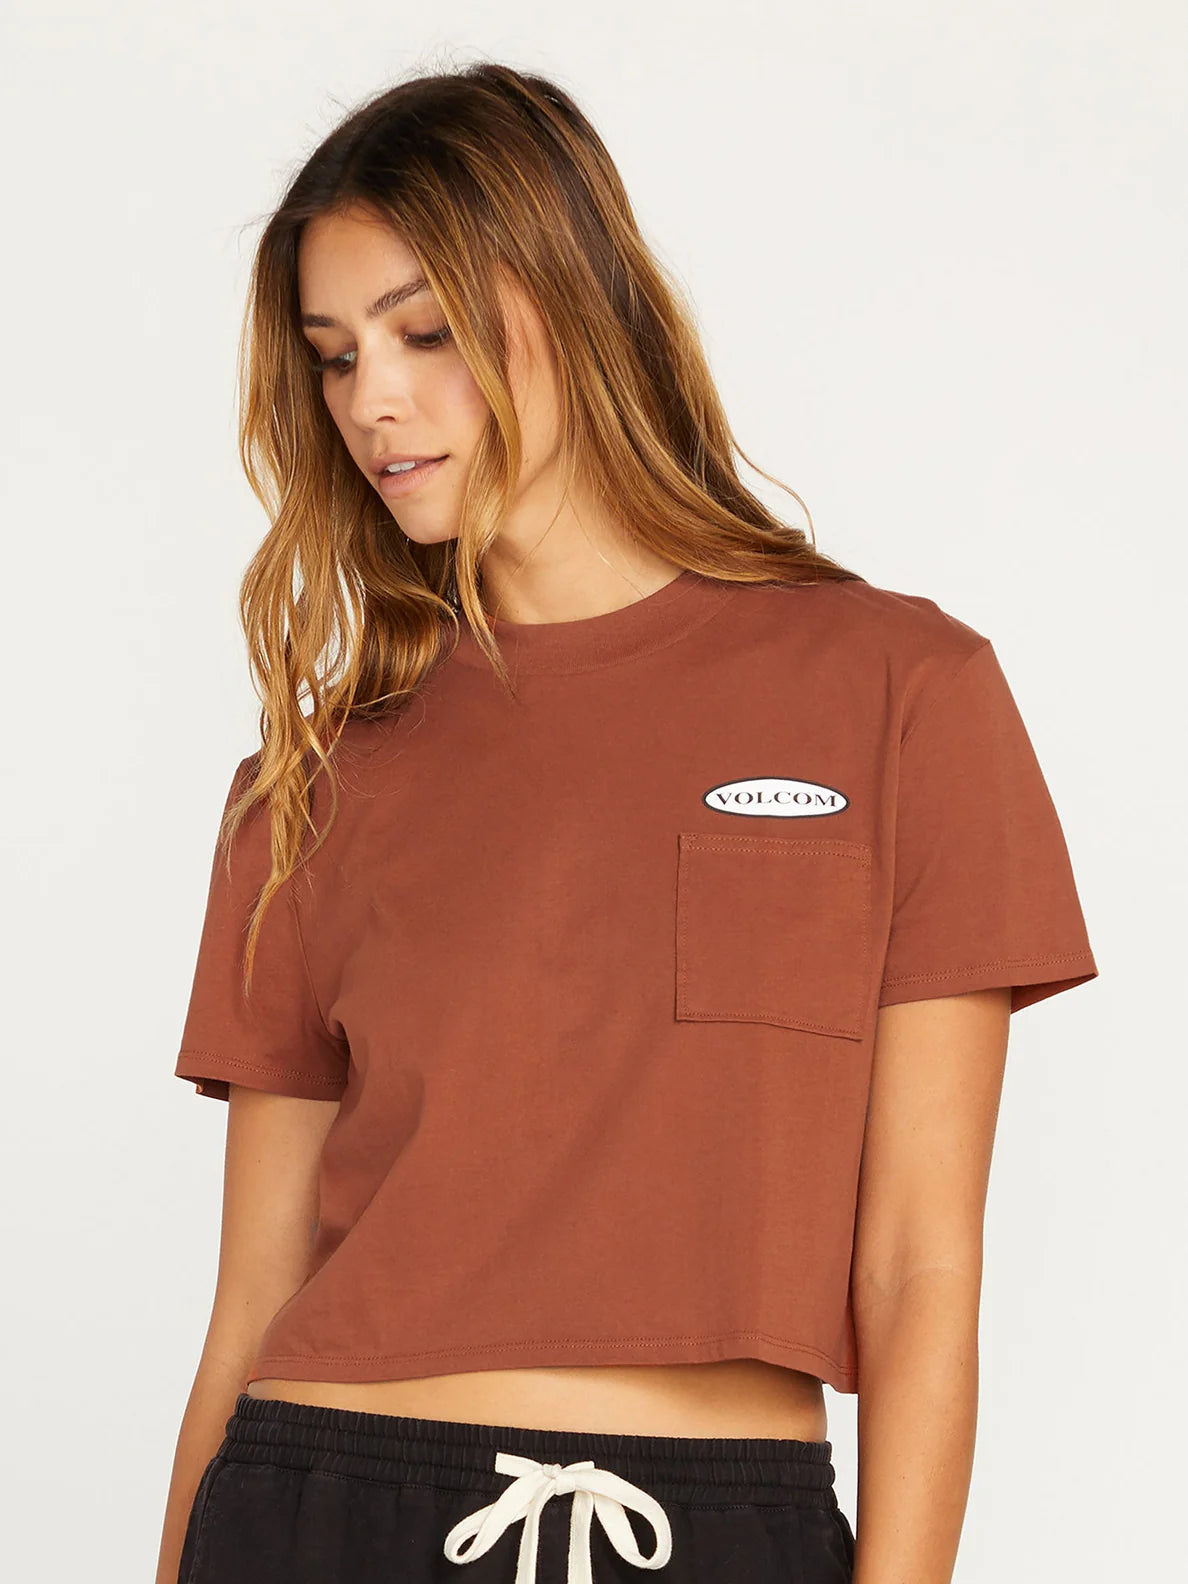 Camiseta Chica Volcom Pocket dial - Dark Clay | Camisetas manga corta de mujer | Volcom Shop | surfdevils.com